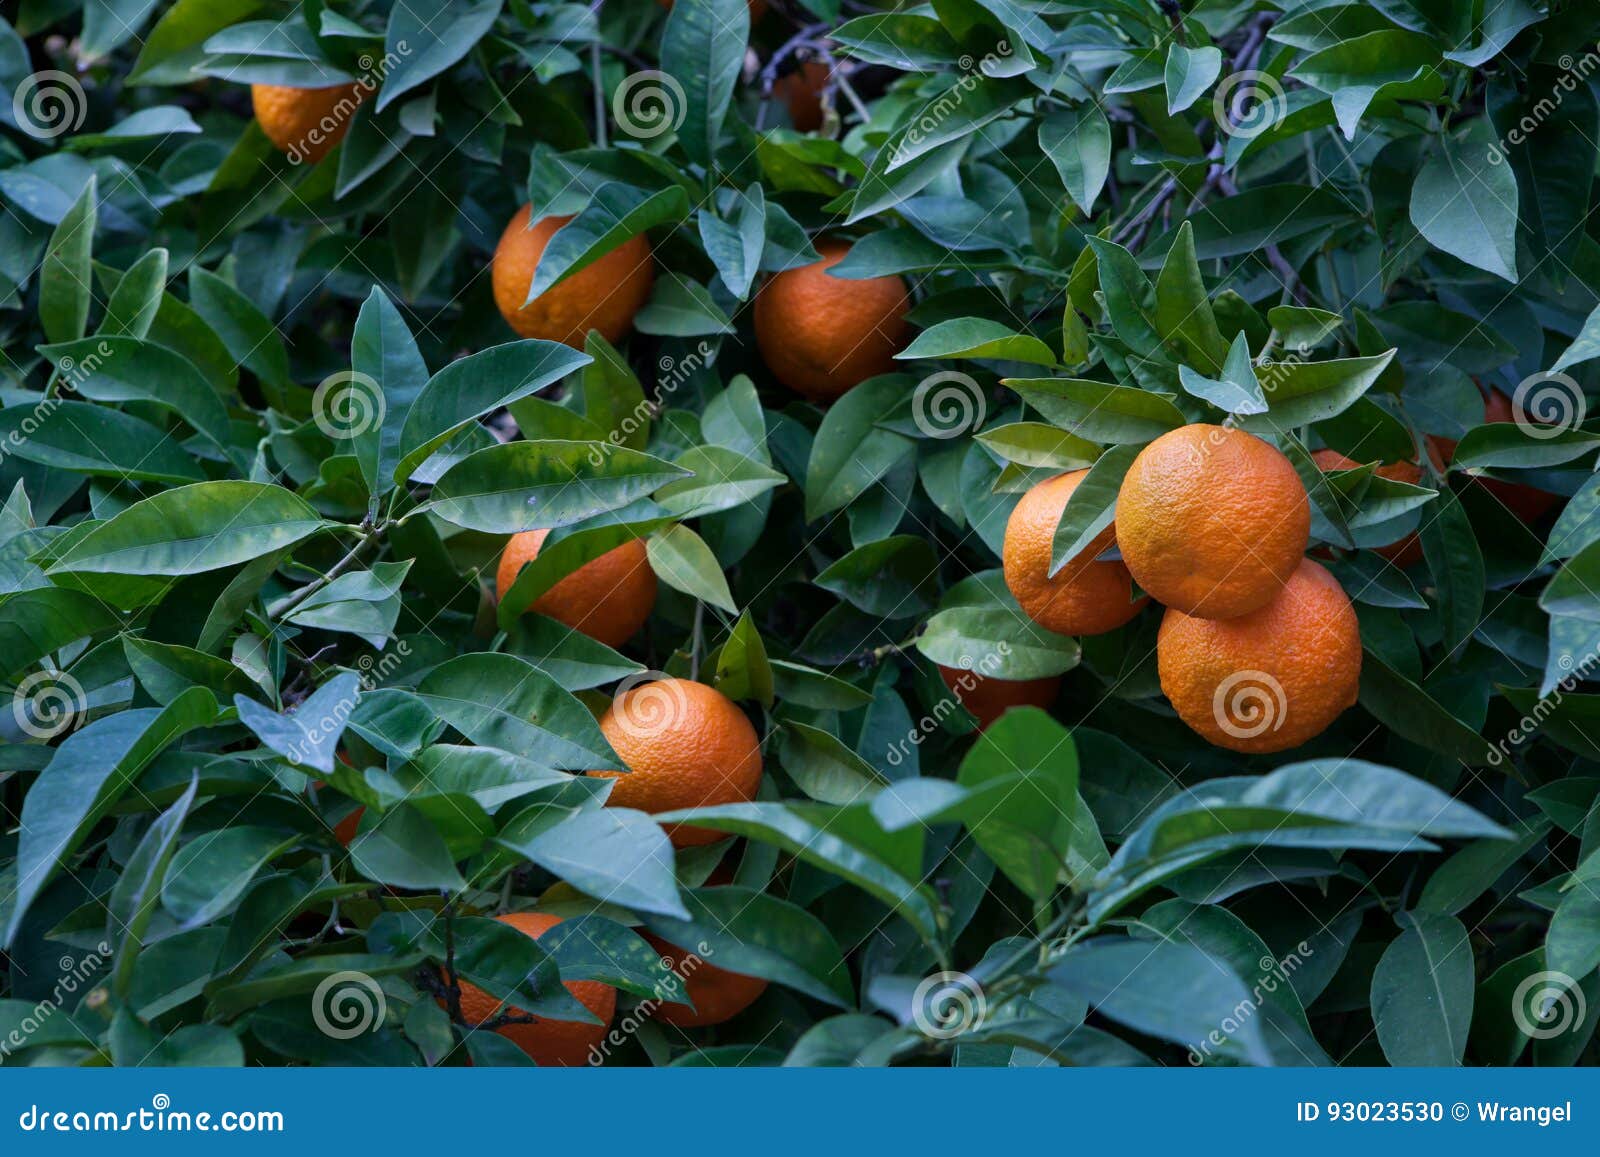 bitter orange tree citrus aurantium